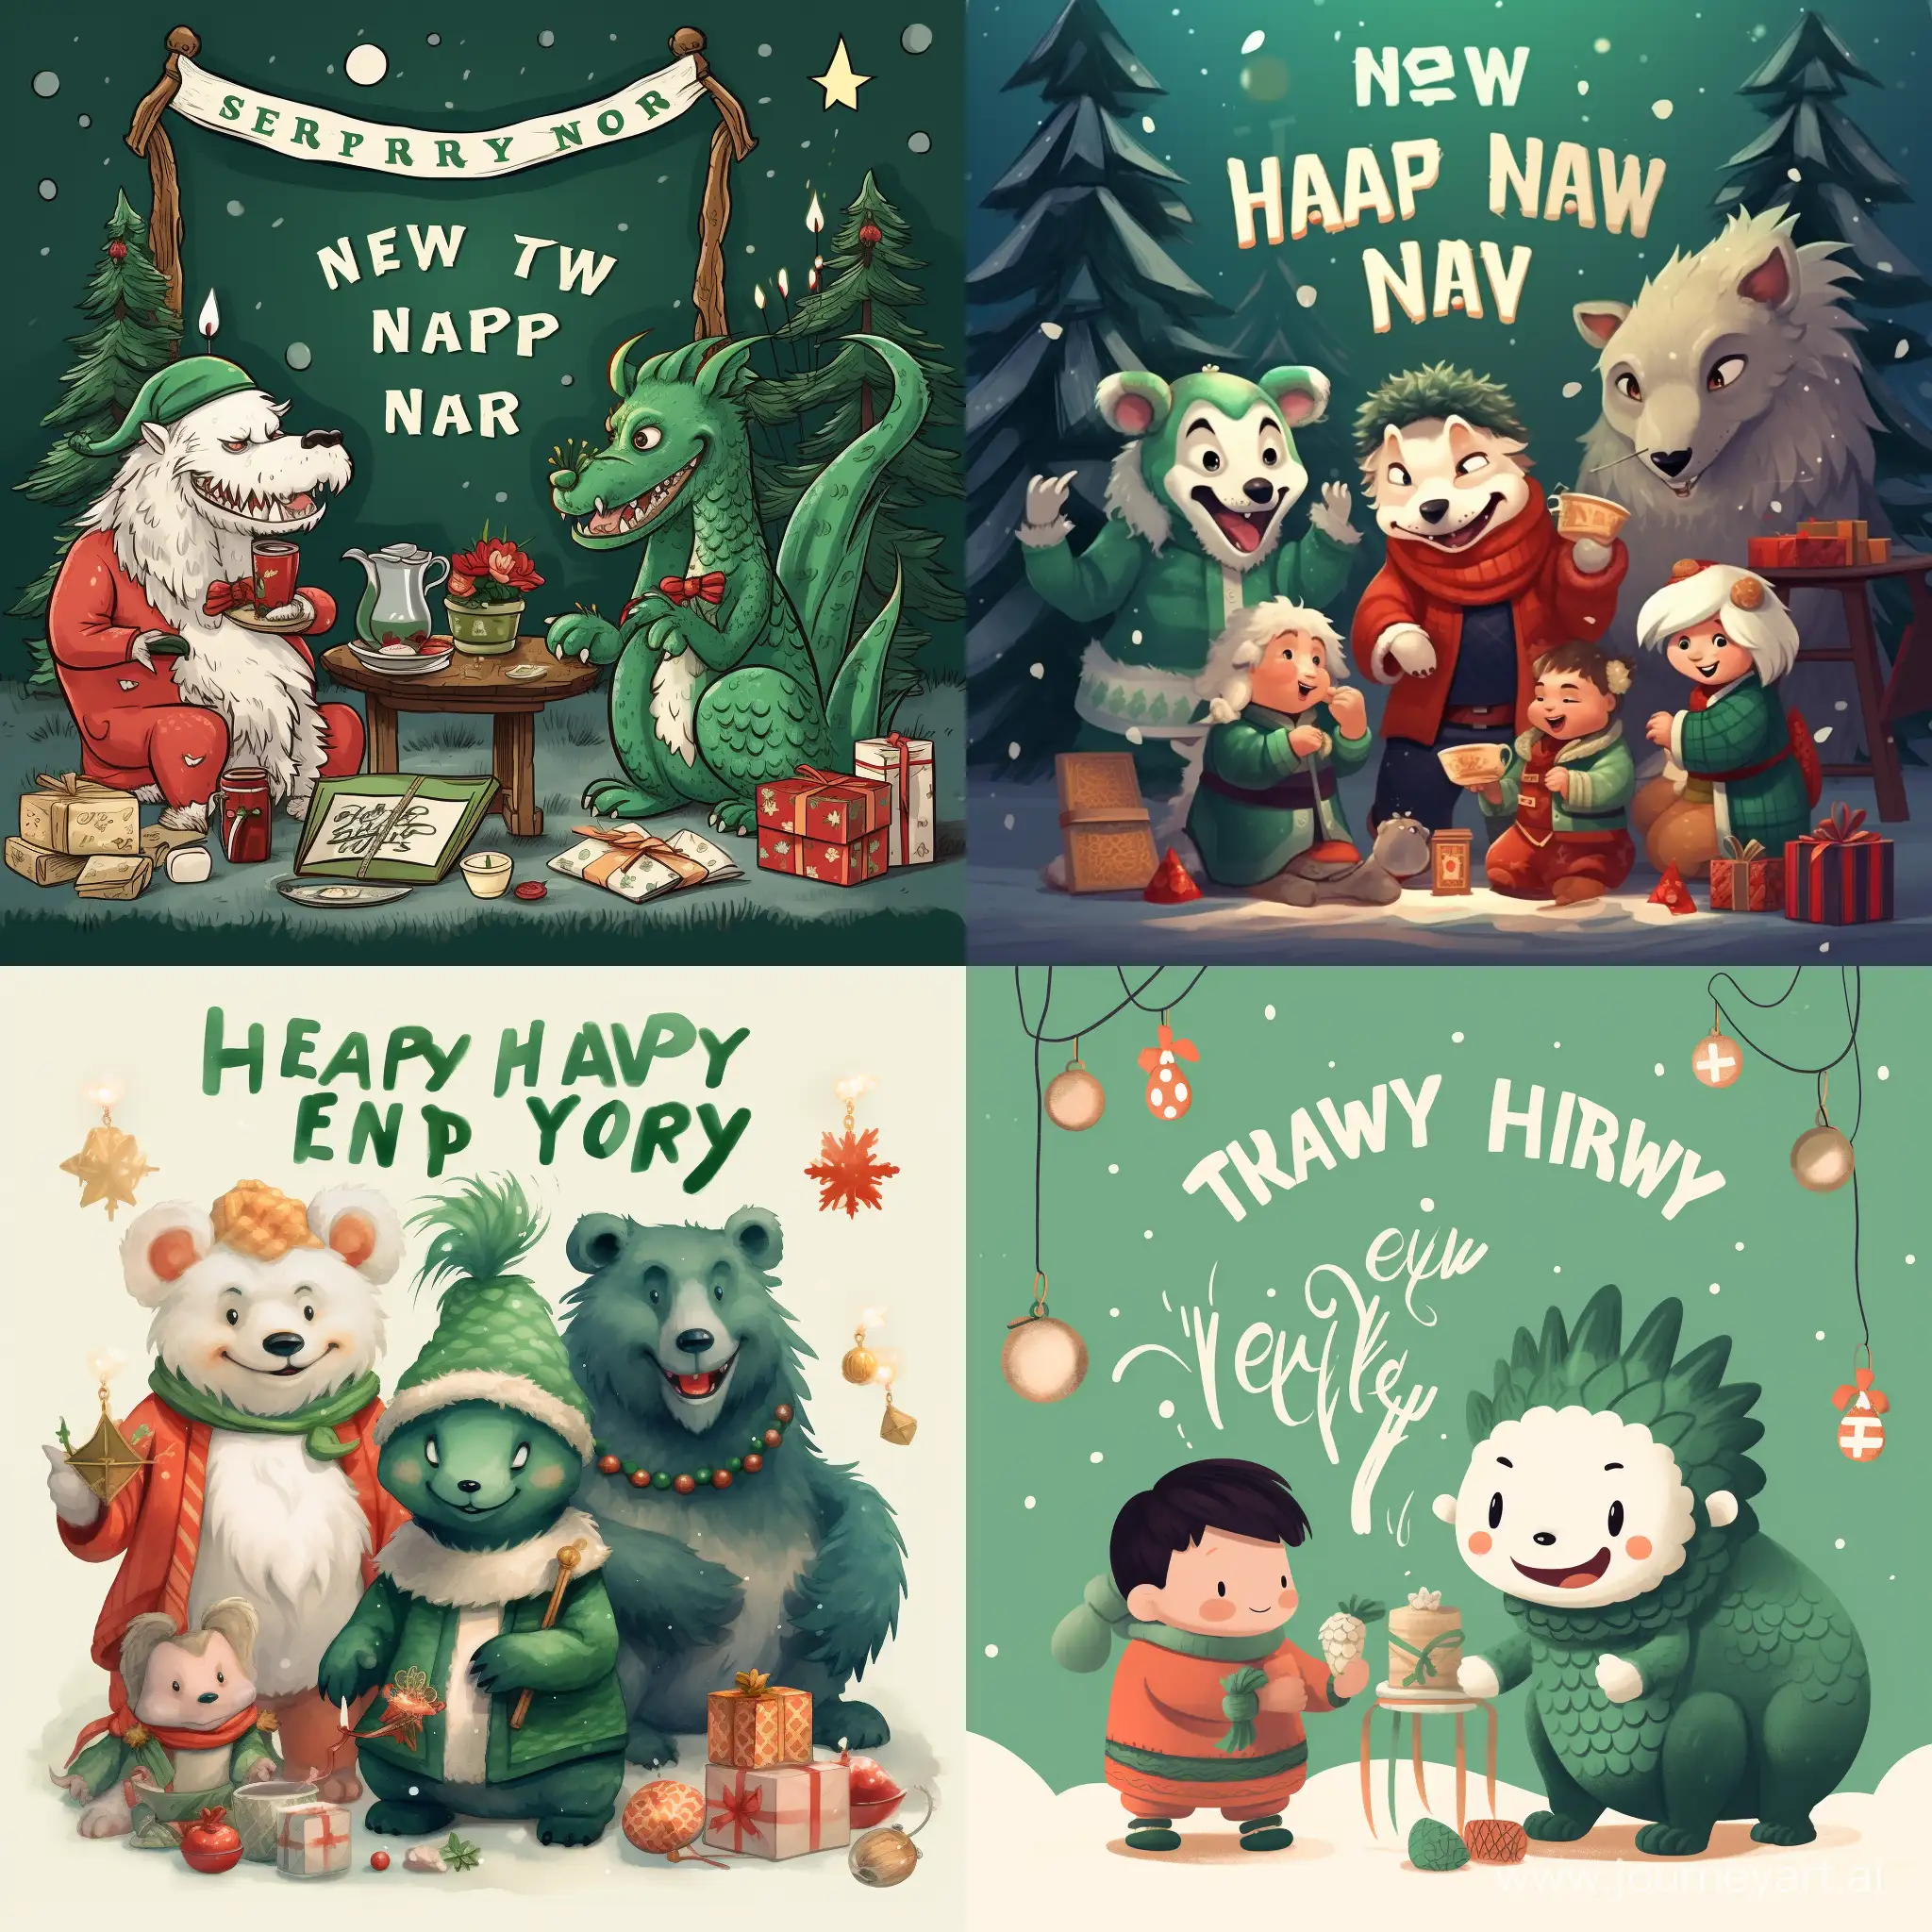  Новогодняя открытка с текстом "С наступающим Новым Годом!" На картинке присутствует китайский  Зелёный, дракон, снег, новогодняя ель, подарки. Общее настроение праздника и уюта. Рядом сидят медведь, волк и заяц.